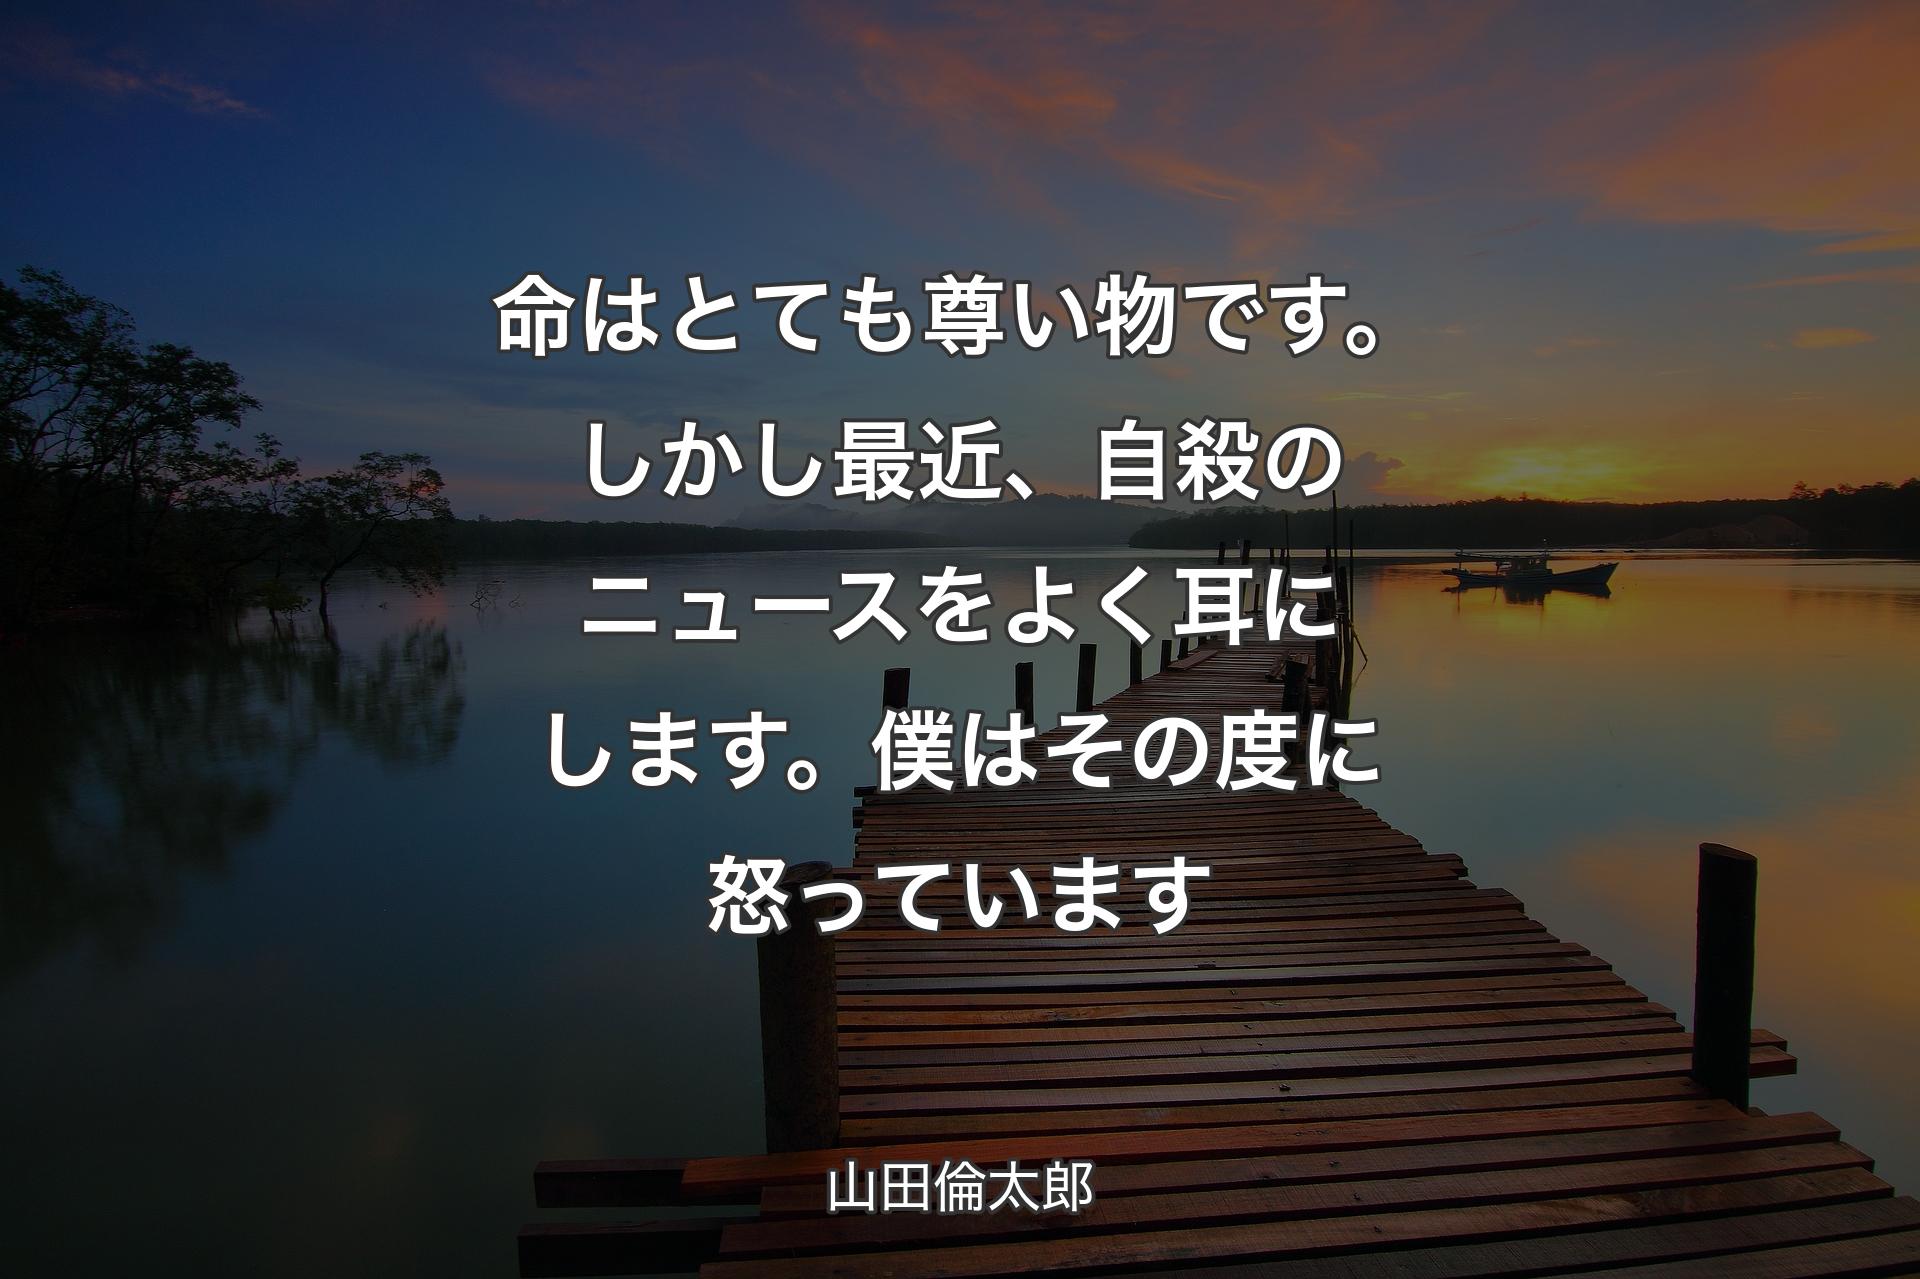 命はとても尊い物です。しかし最近、自殺のニュースをよく耳にします。僕はその度に怒っています - 山田倫太郎